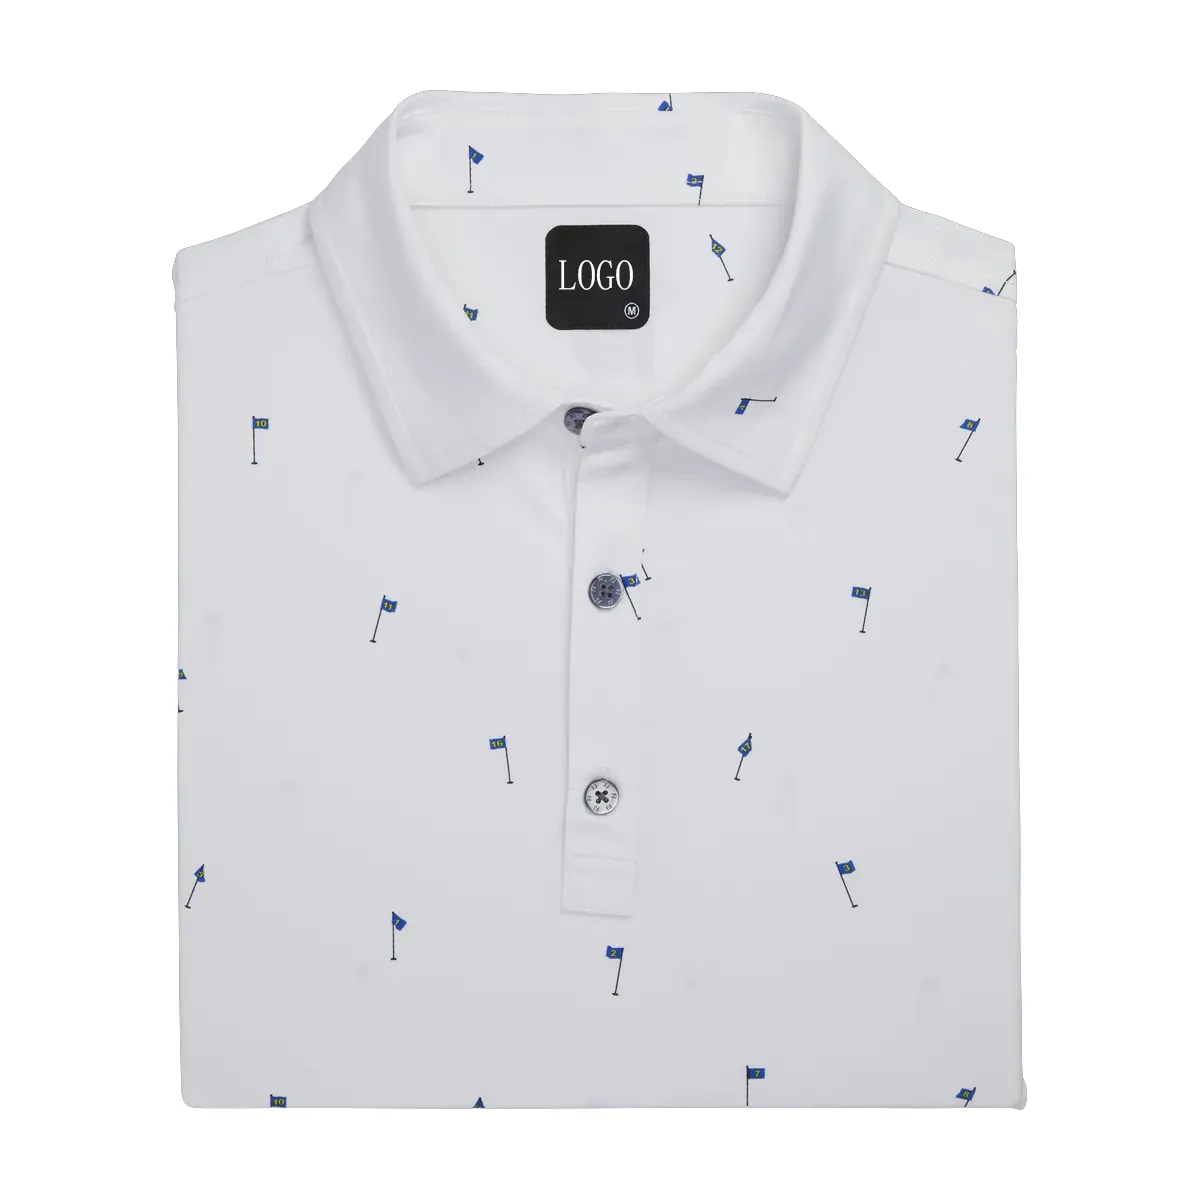 Özel Logo yüksek kalite beyaz streç 18 delikleri baskı Lisle kendinden yaka sublime performans erkekler Polo GÖMLEK için Golf kıyafetleri